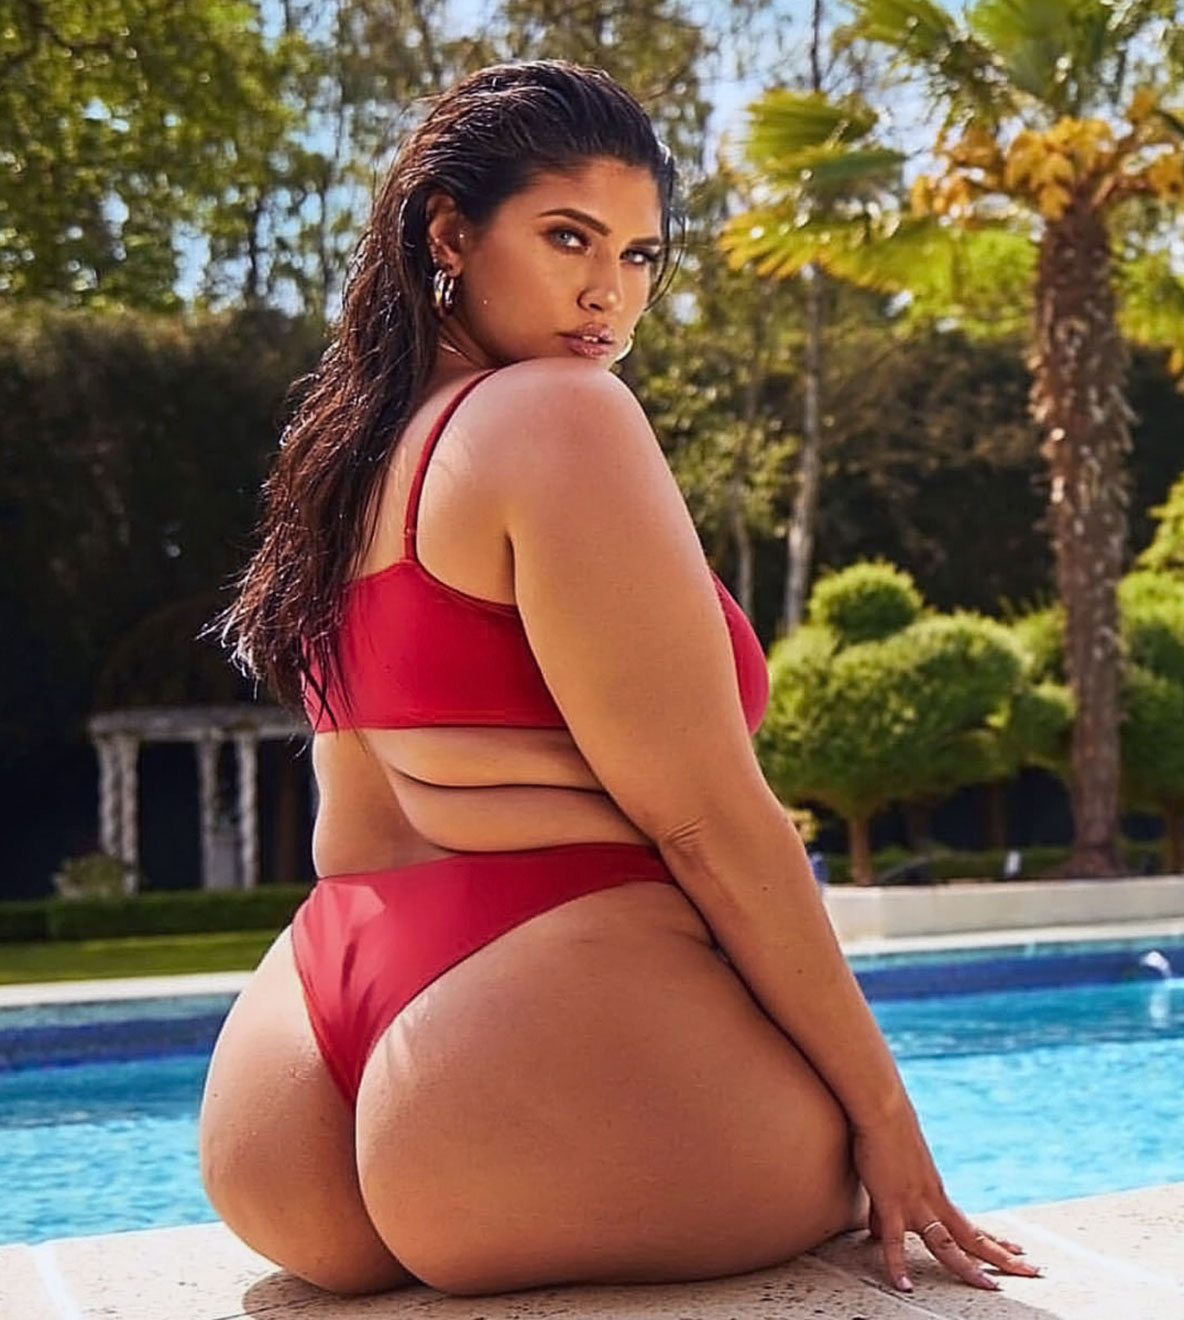 Big Boobs Big Ass Big Butt Woman Women's Plus Size